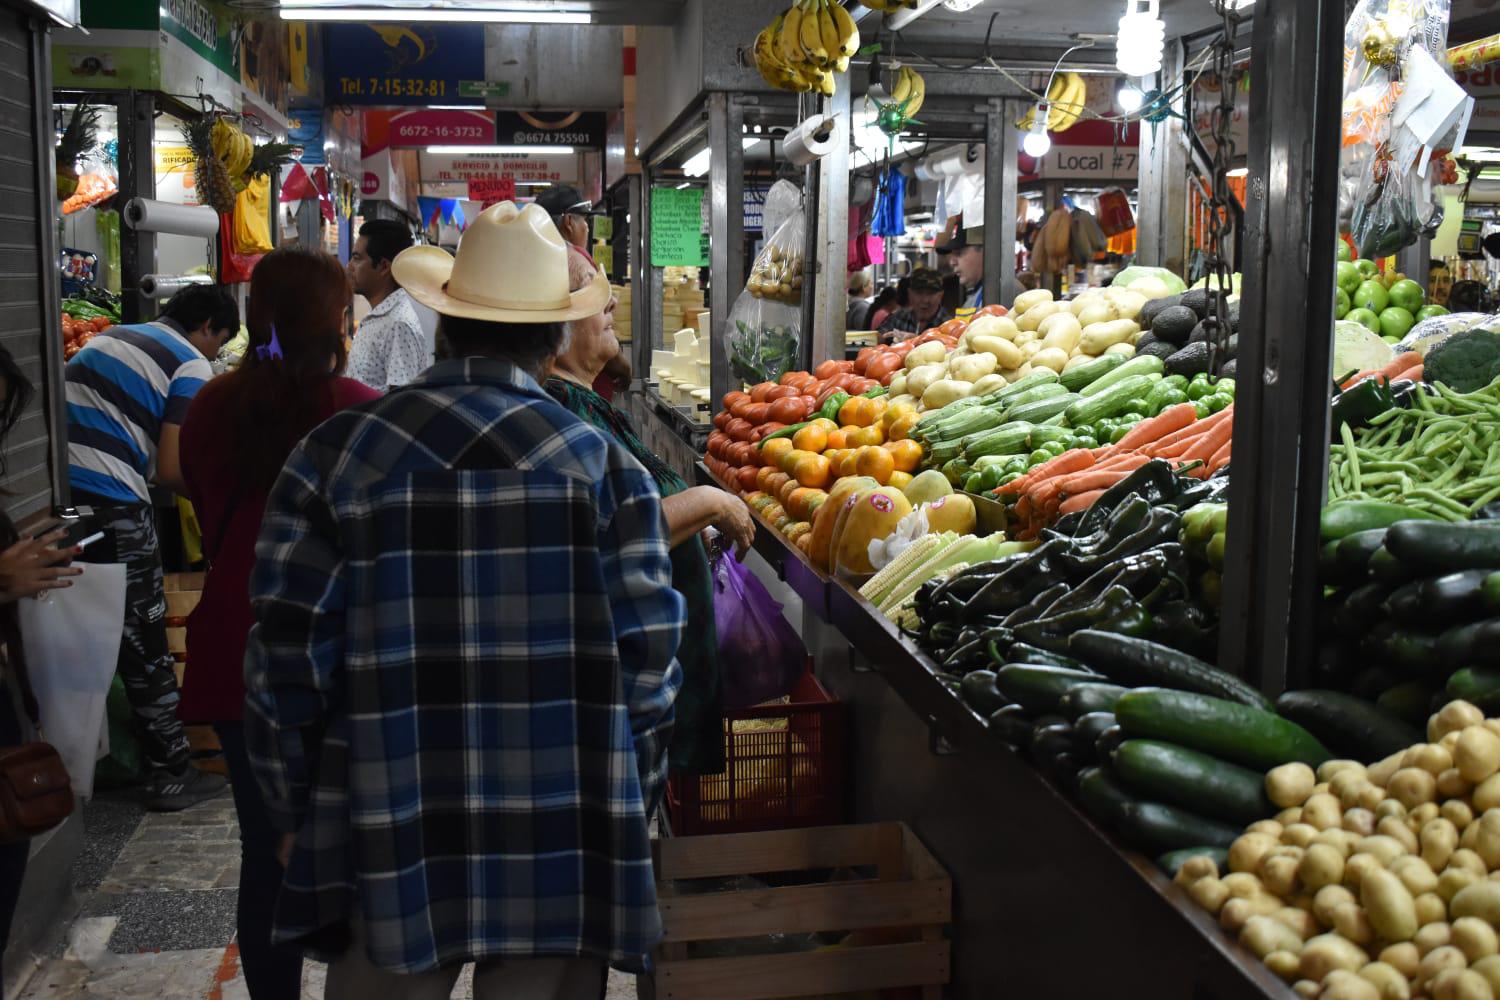 $!Vendedores de verdura en Culiacán reportan aumento en el precio del tomate